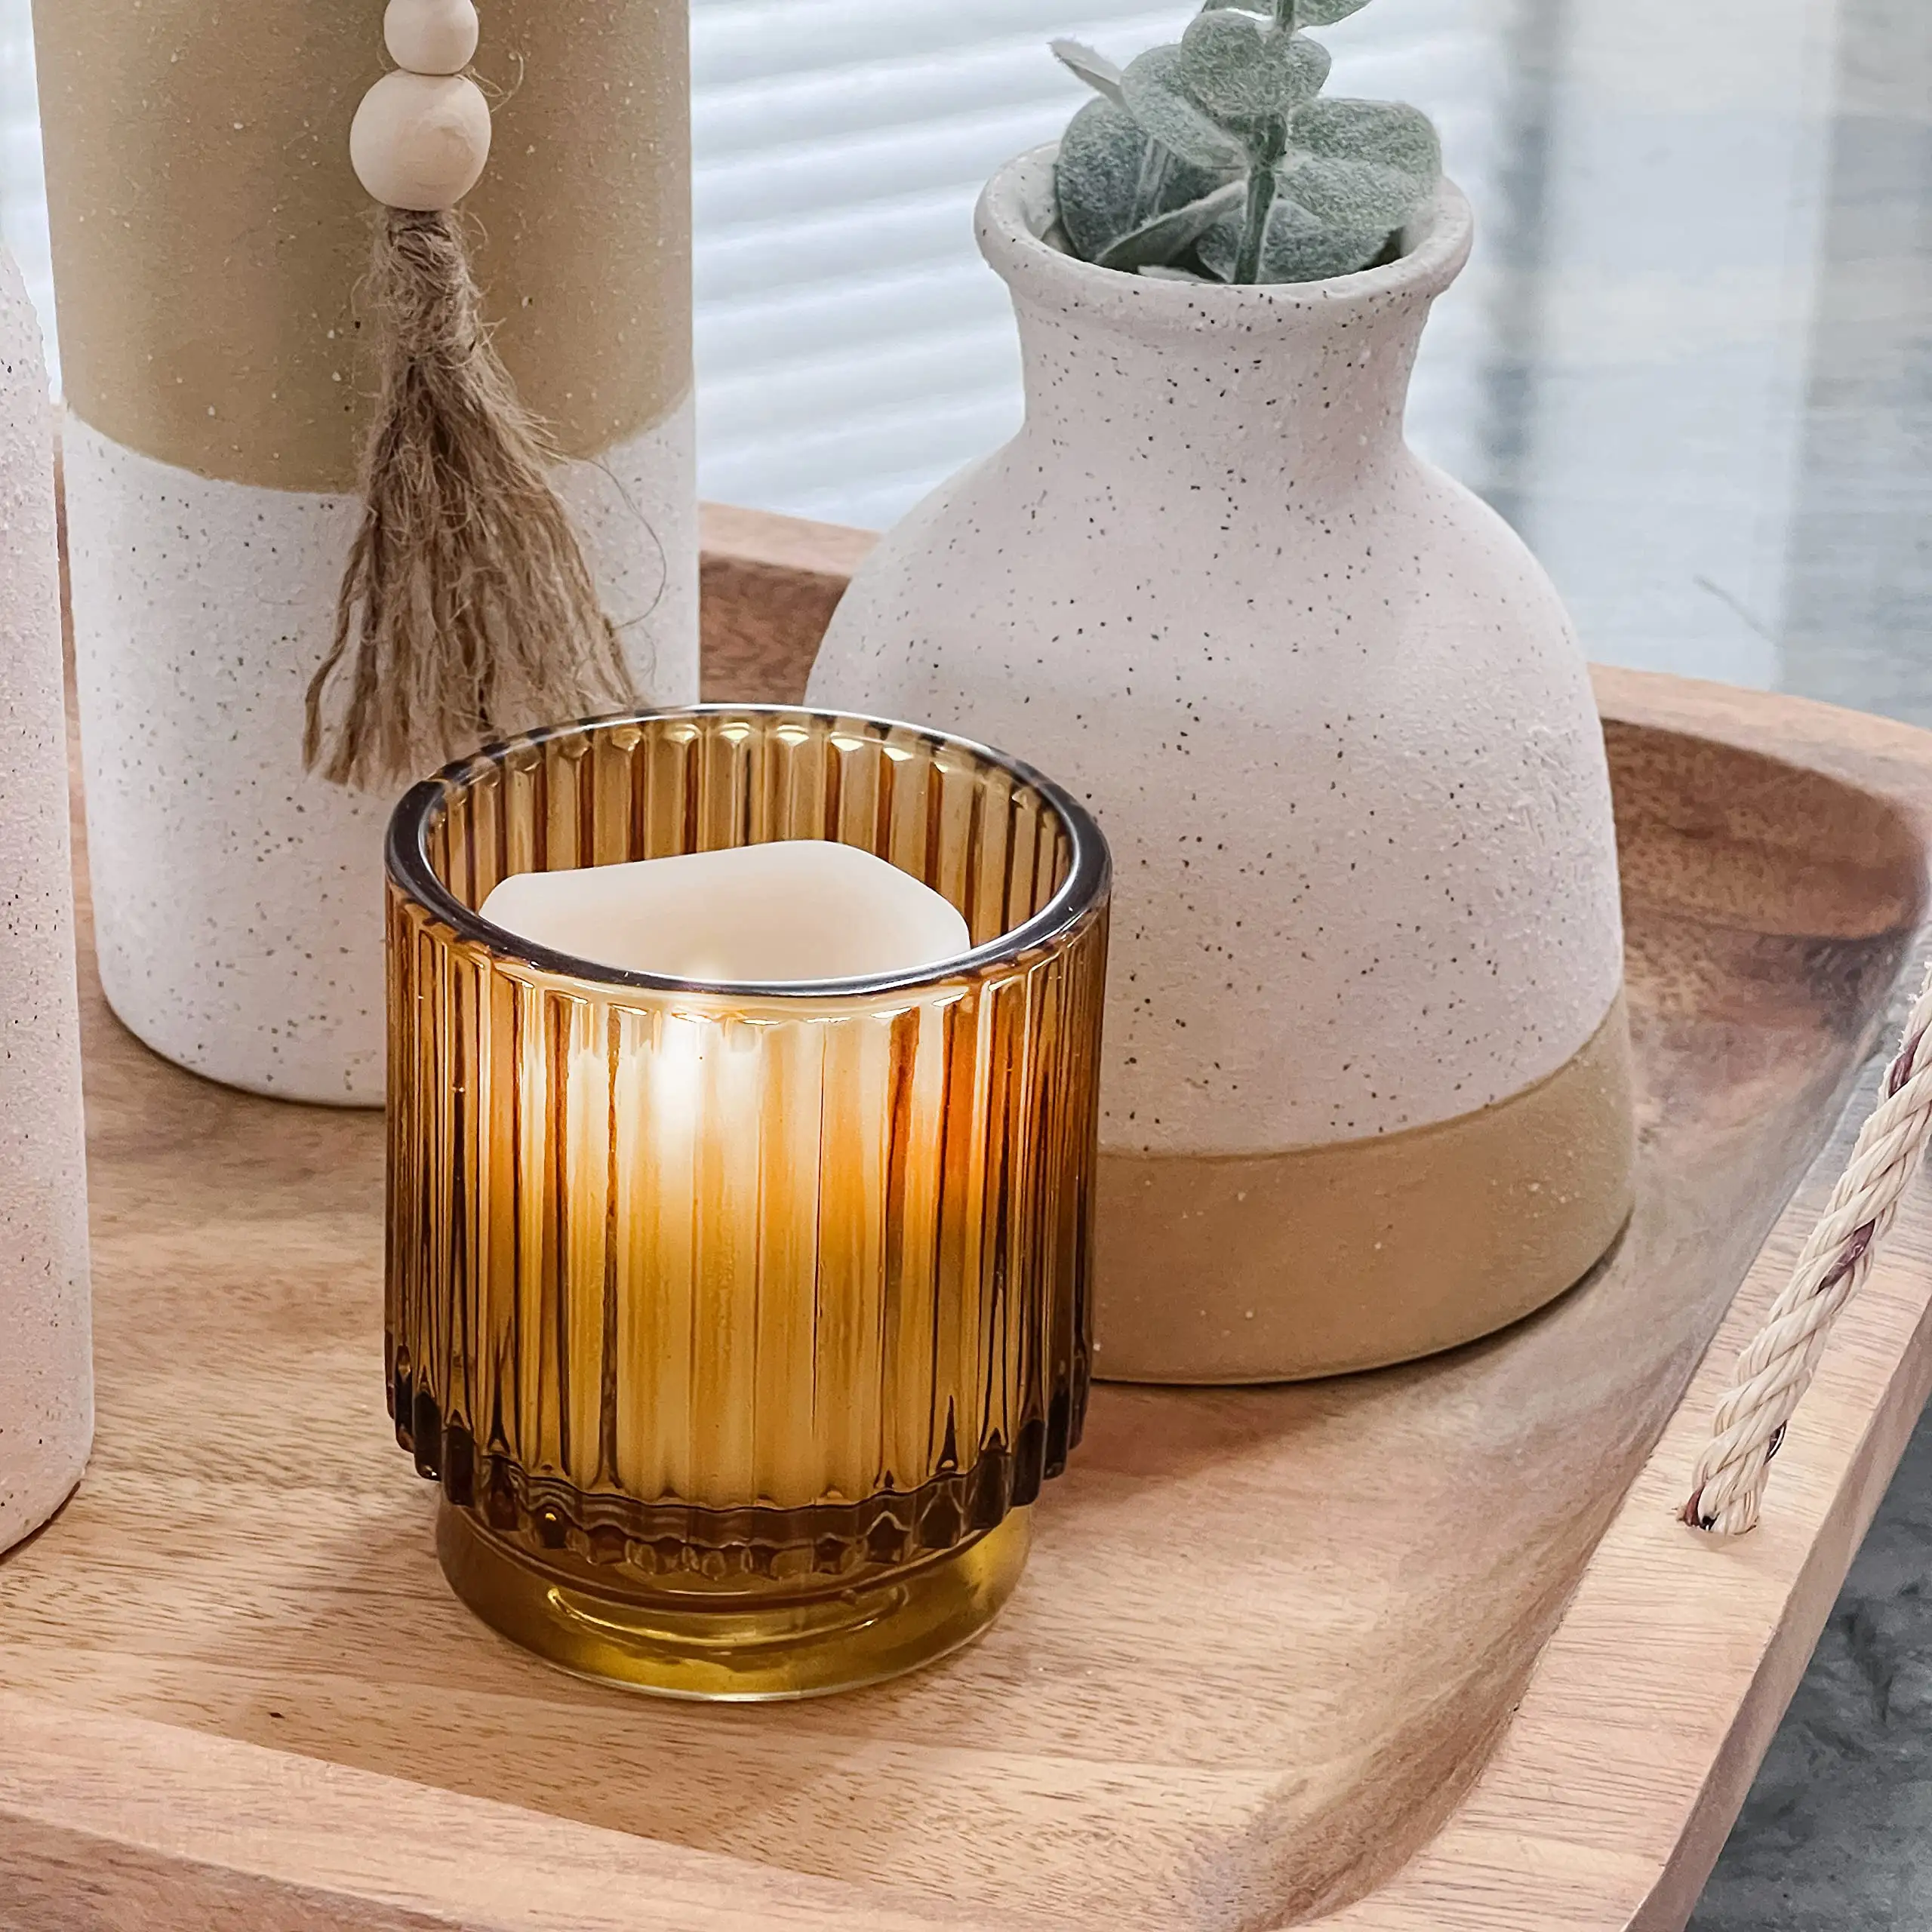 Portacandele moderno in vetro a coste semplice cena romantica a lume di candela aromaterapia portacandele tealight decorazione